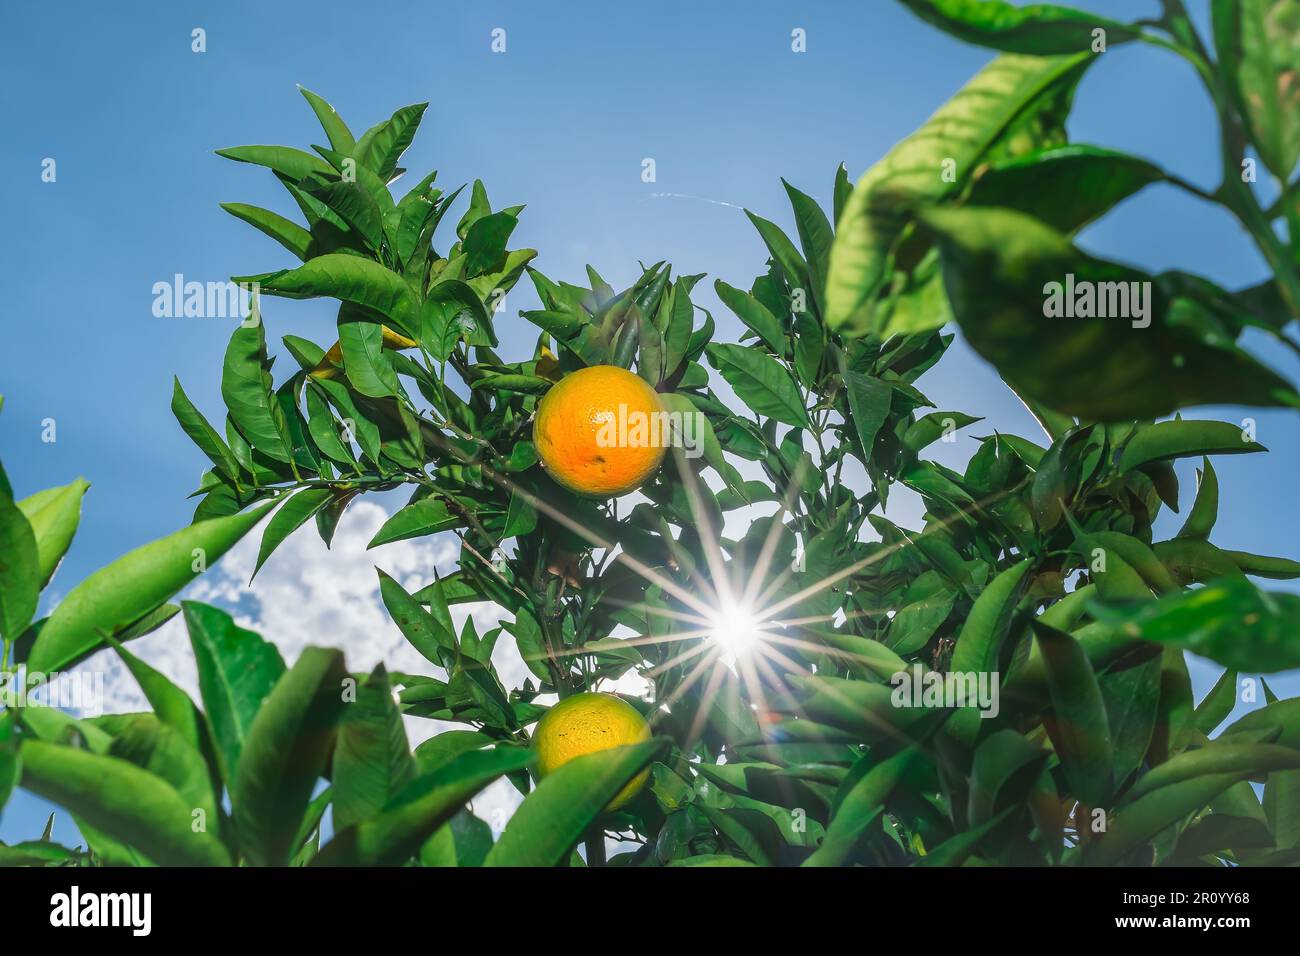 Reife Orangen, die Sonne scheint durch das Laub in den Rahmen, erntet Zitrusfrüchte. Selektiver Fokus auf Orangen, Idee für Hintergrund, Saft-Adve Stockfoto